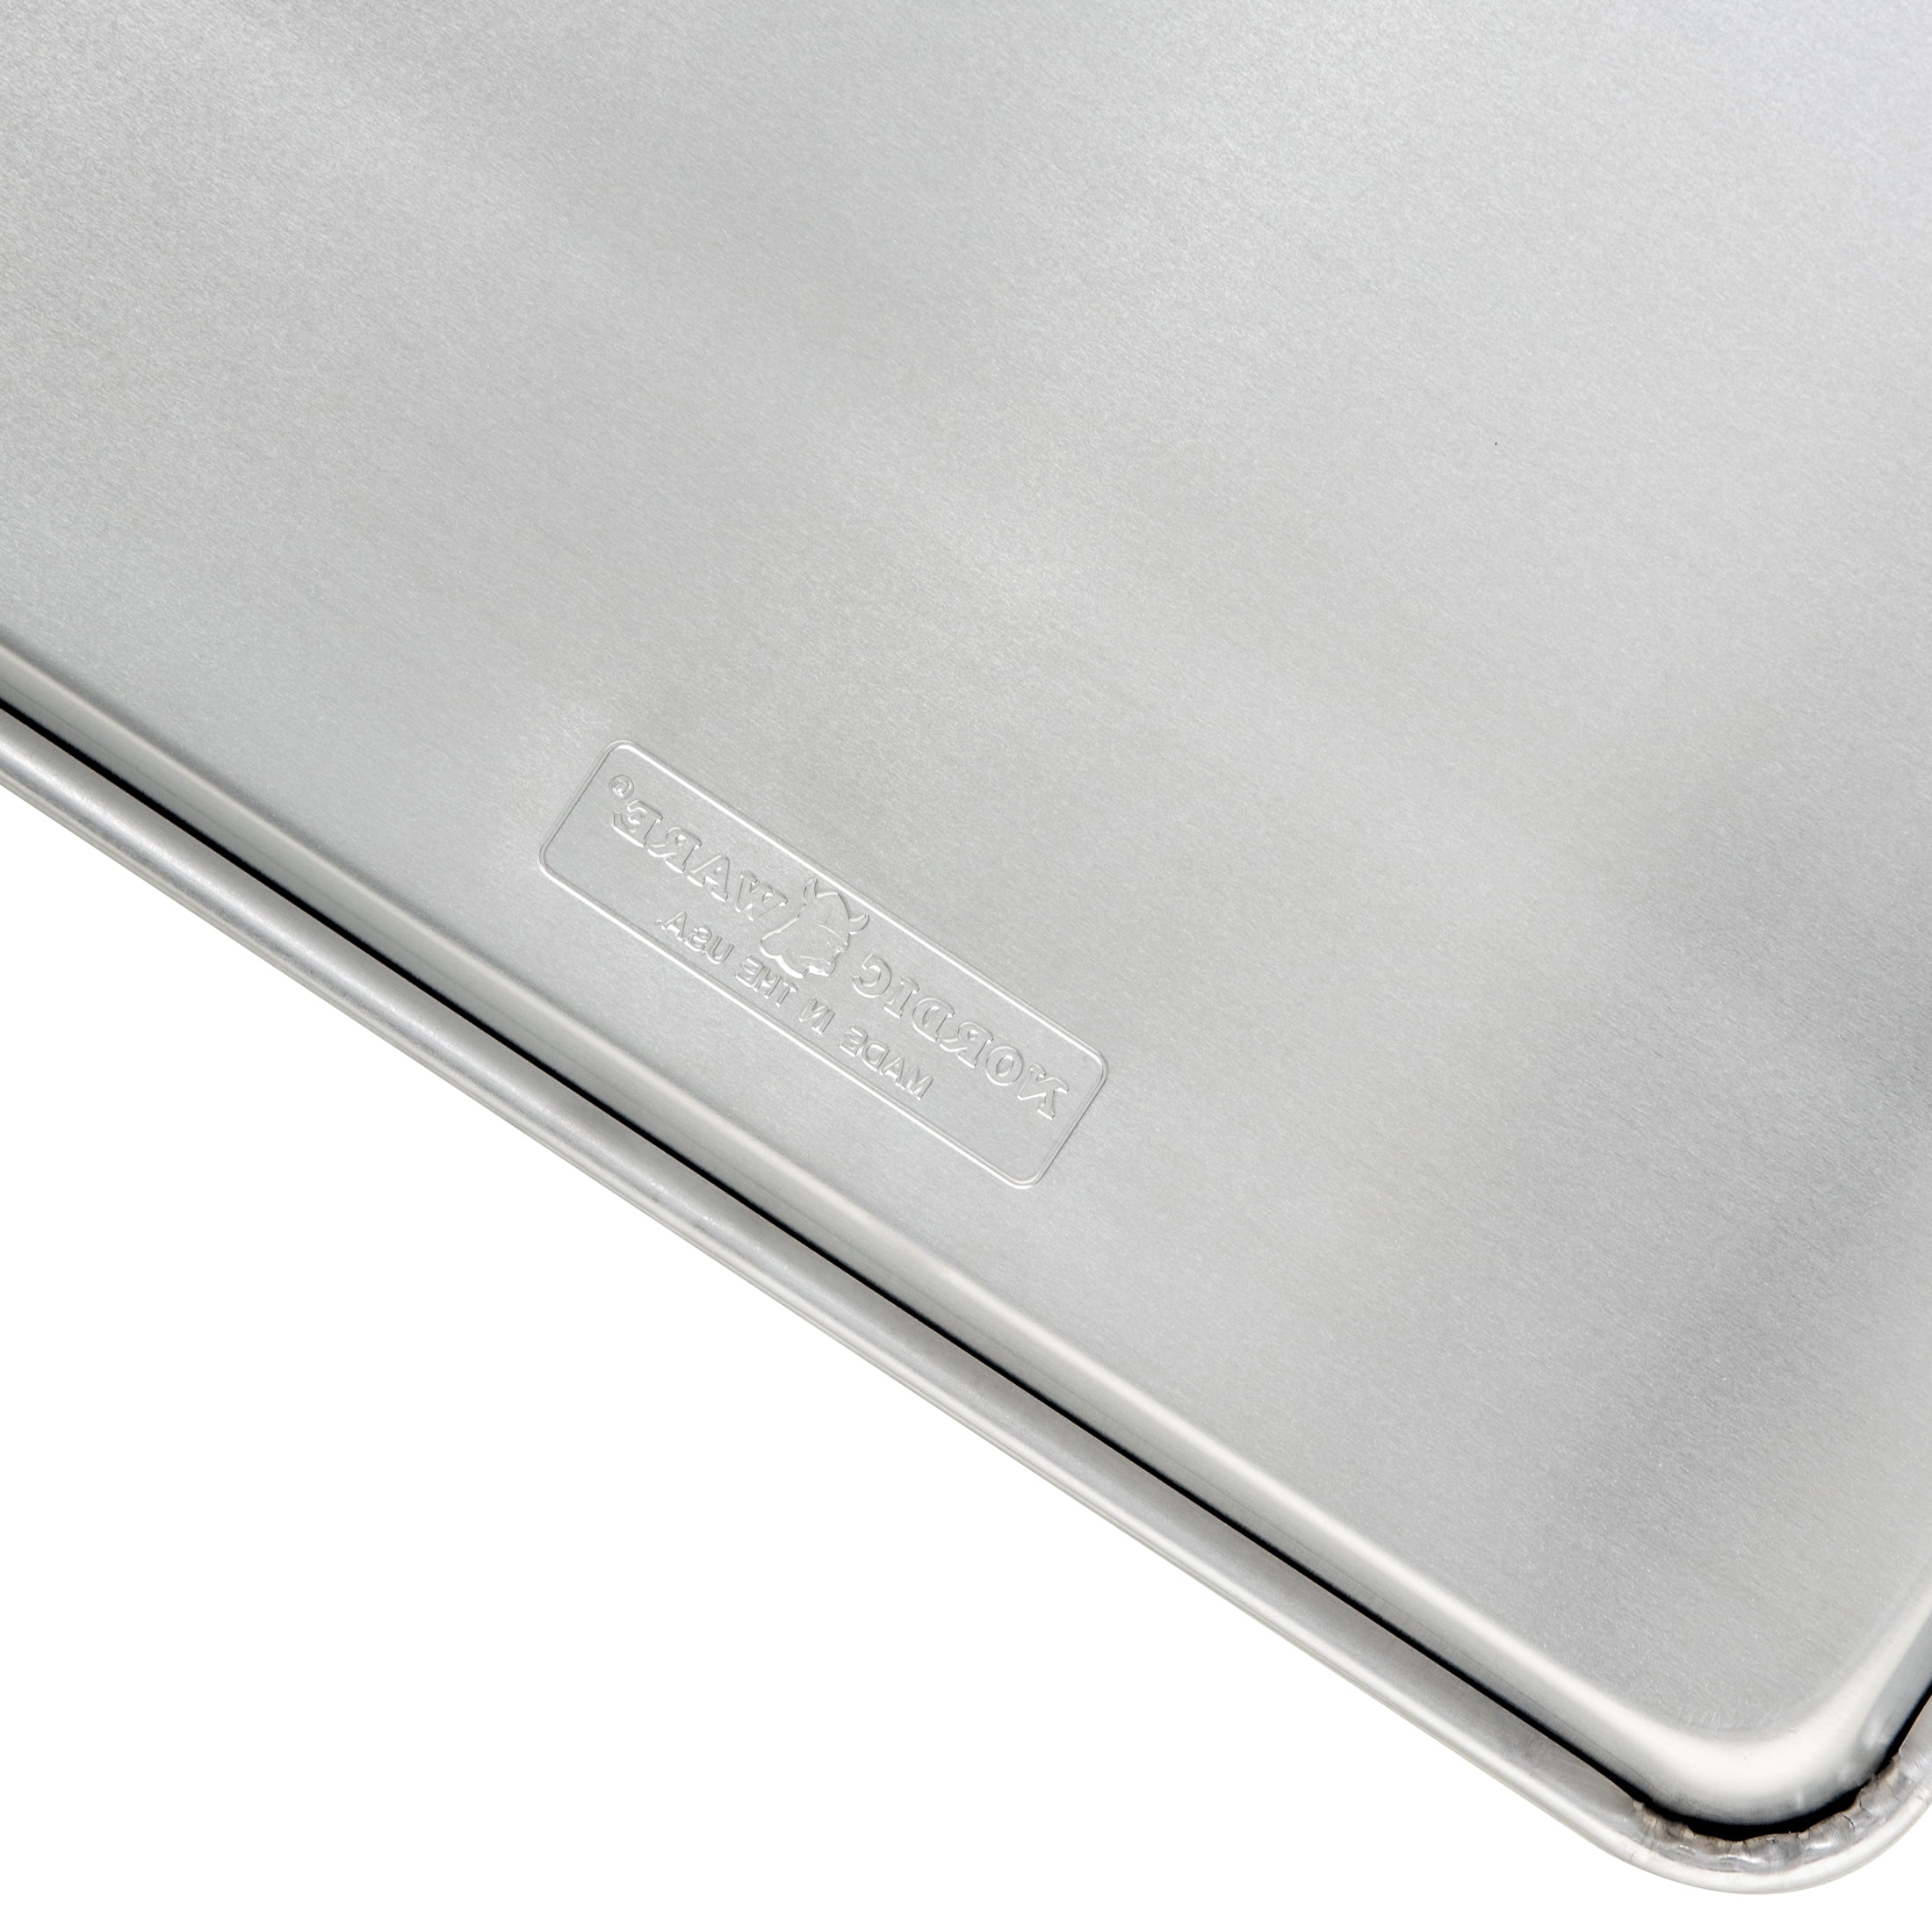 Nordic Ware Naturals Aluminum 4 Pack 1/8 Sheets, 10.1 x 7 x 1.1